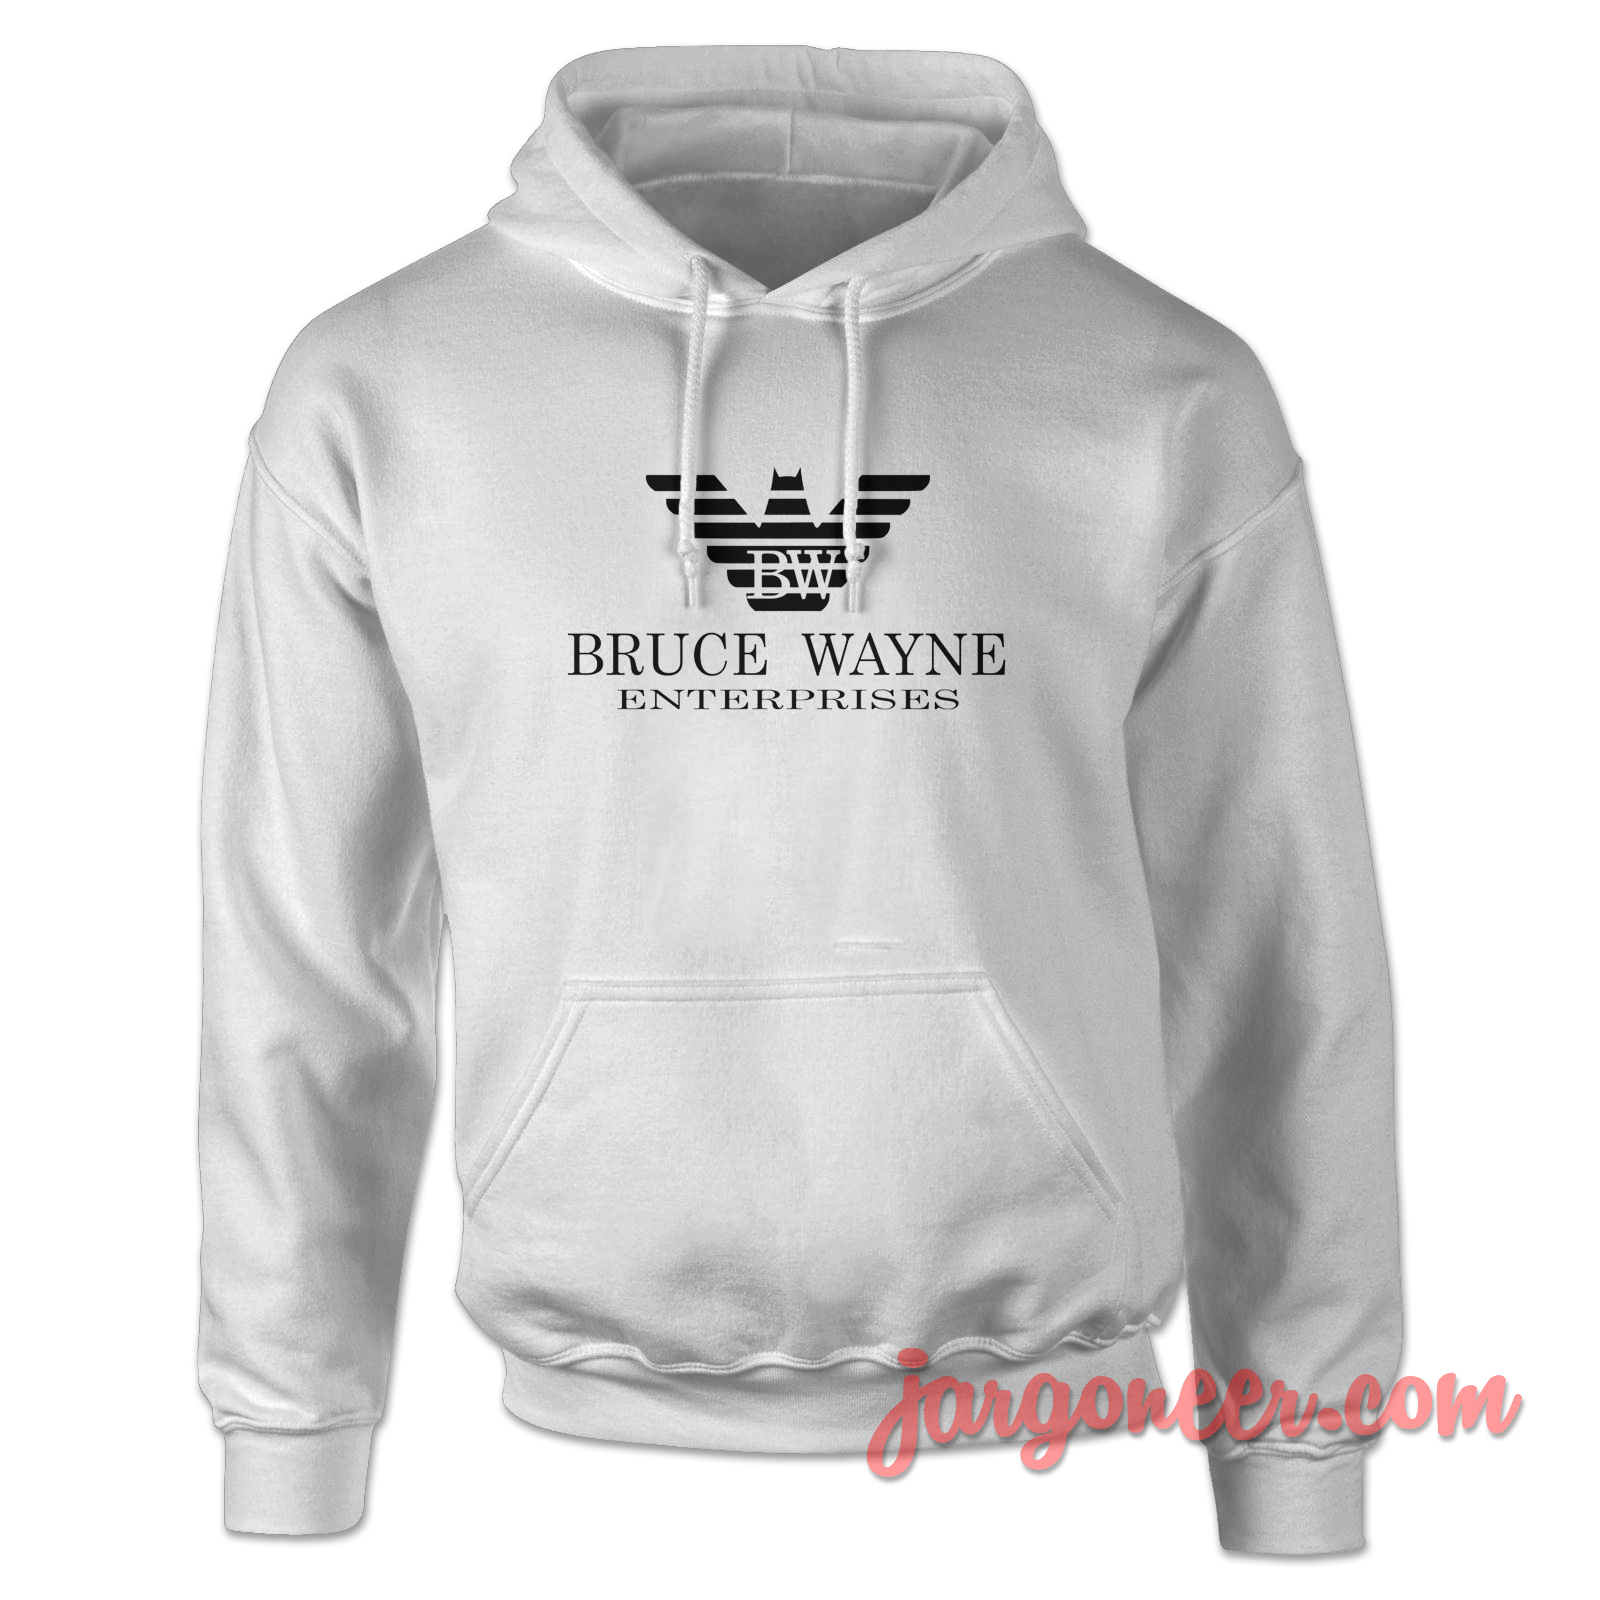 Bruce Wayne Enterprise - Shop Unique Graphic Cool Shirt Designs